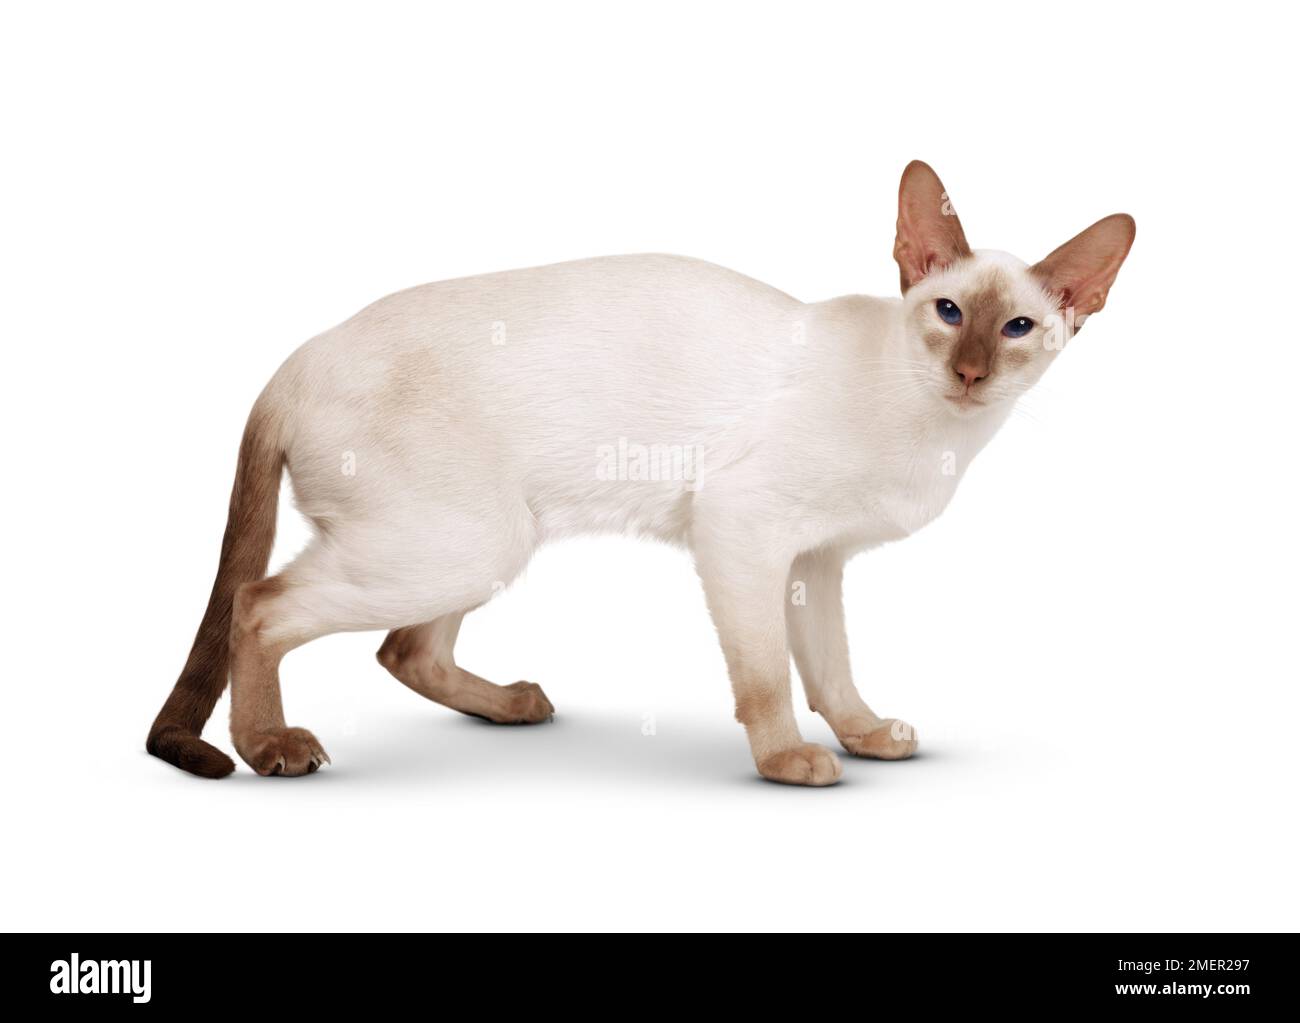 Femelle Cinnamon point Siamese chat avec les yeux bleus, debout, regardant la caméra, vue latérale Banque D'Images